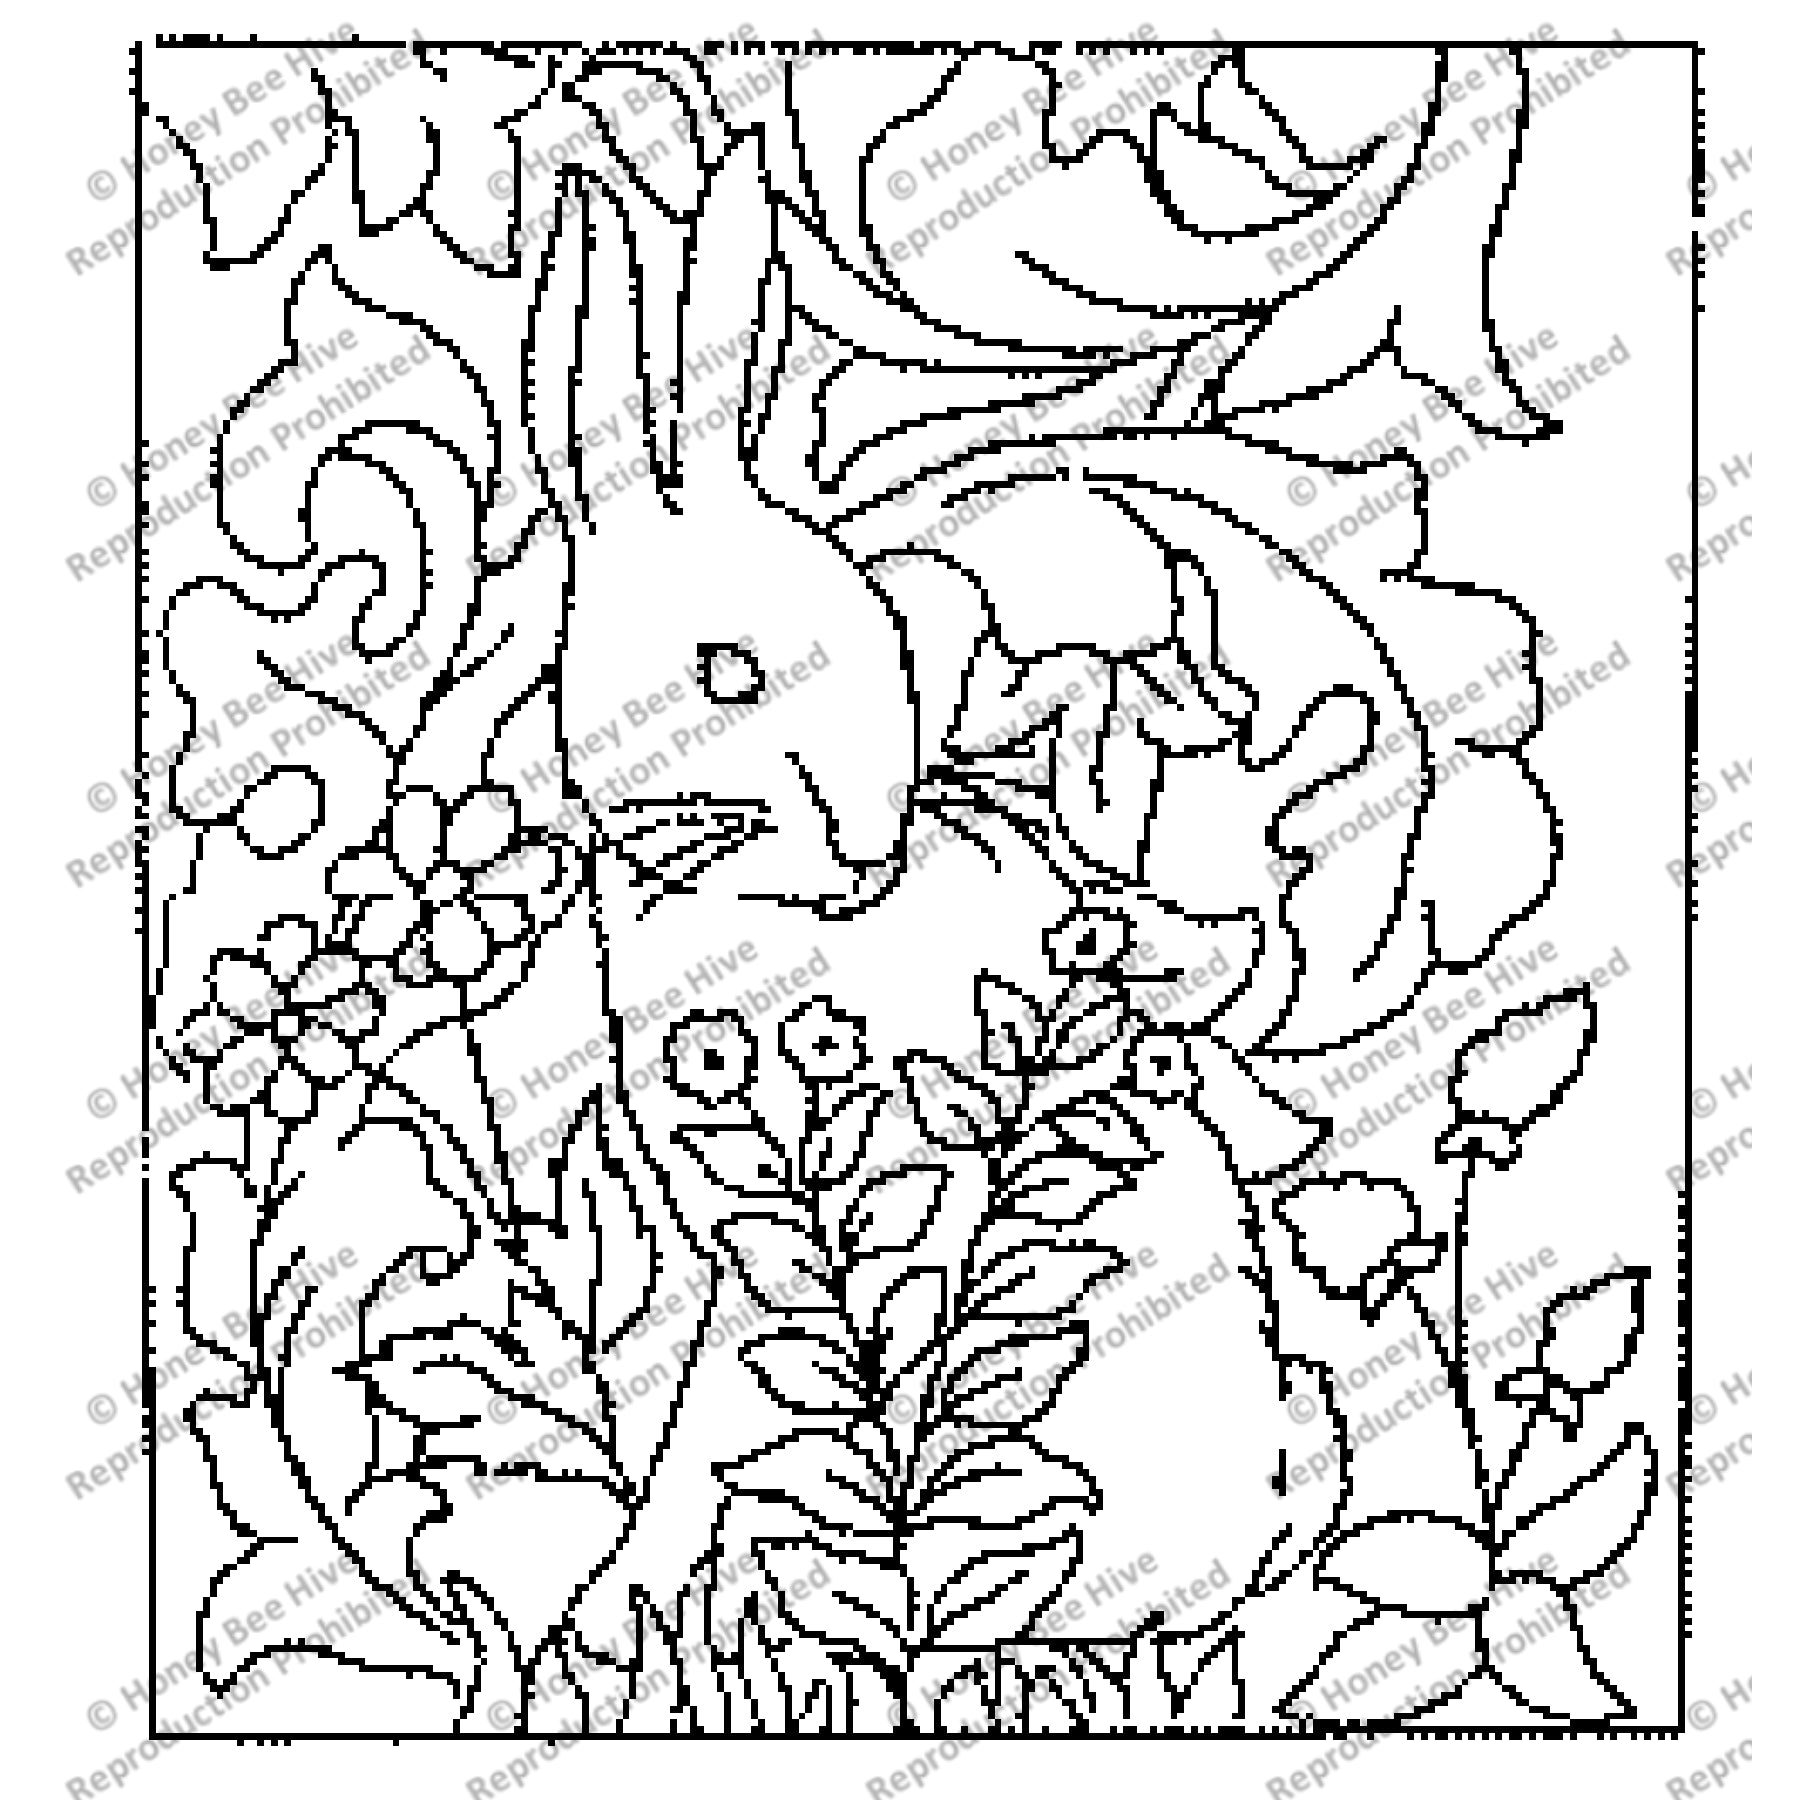 Morris Bunny, rug hooking pattern